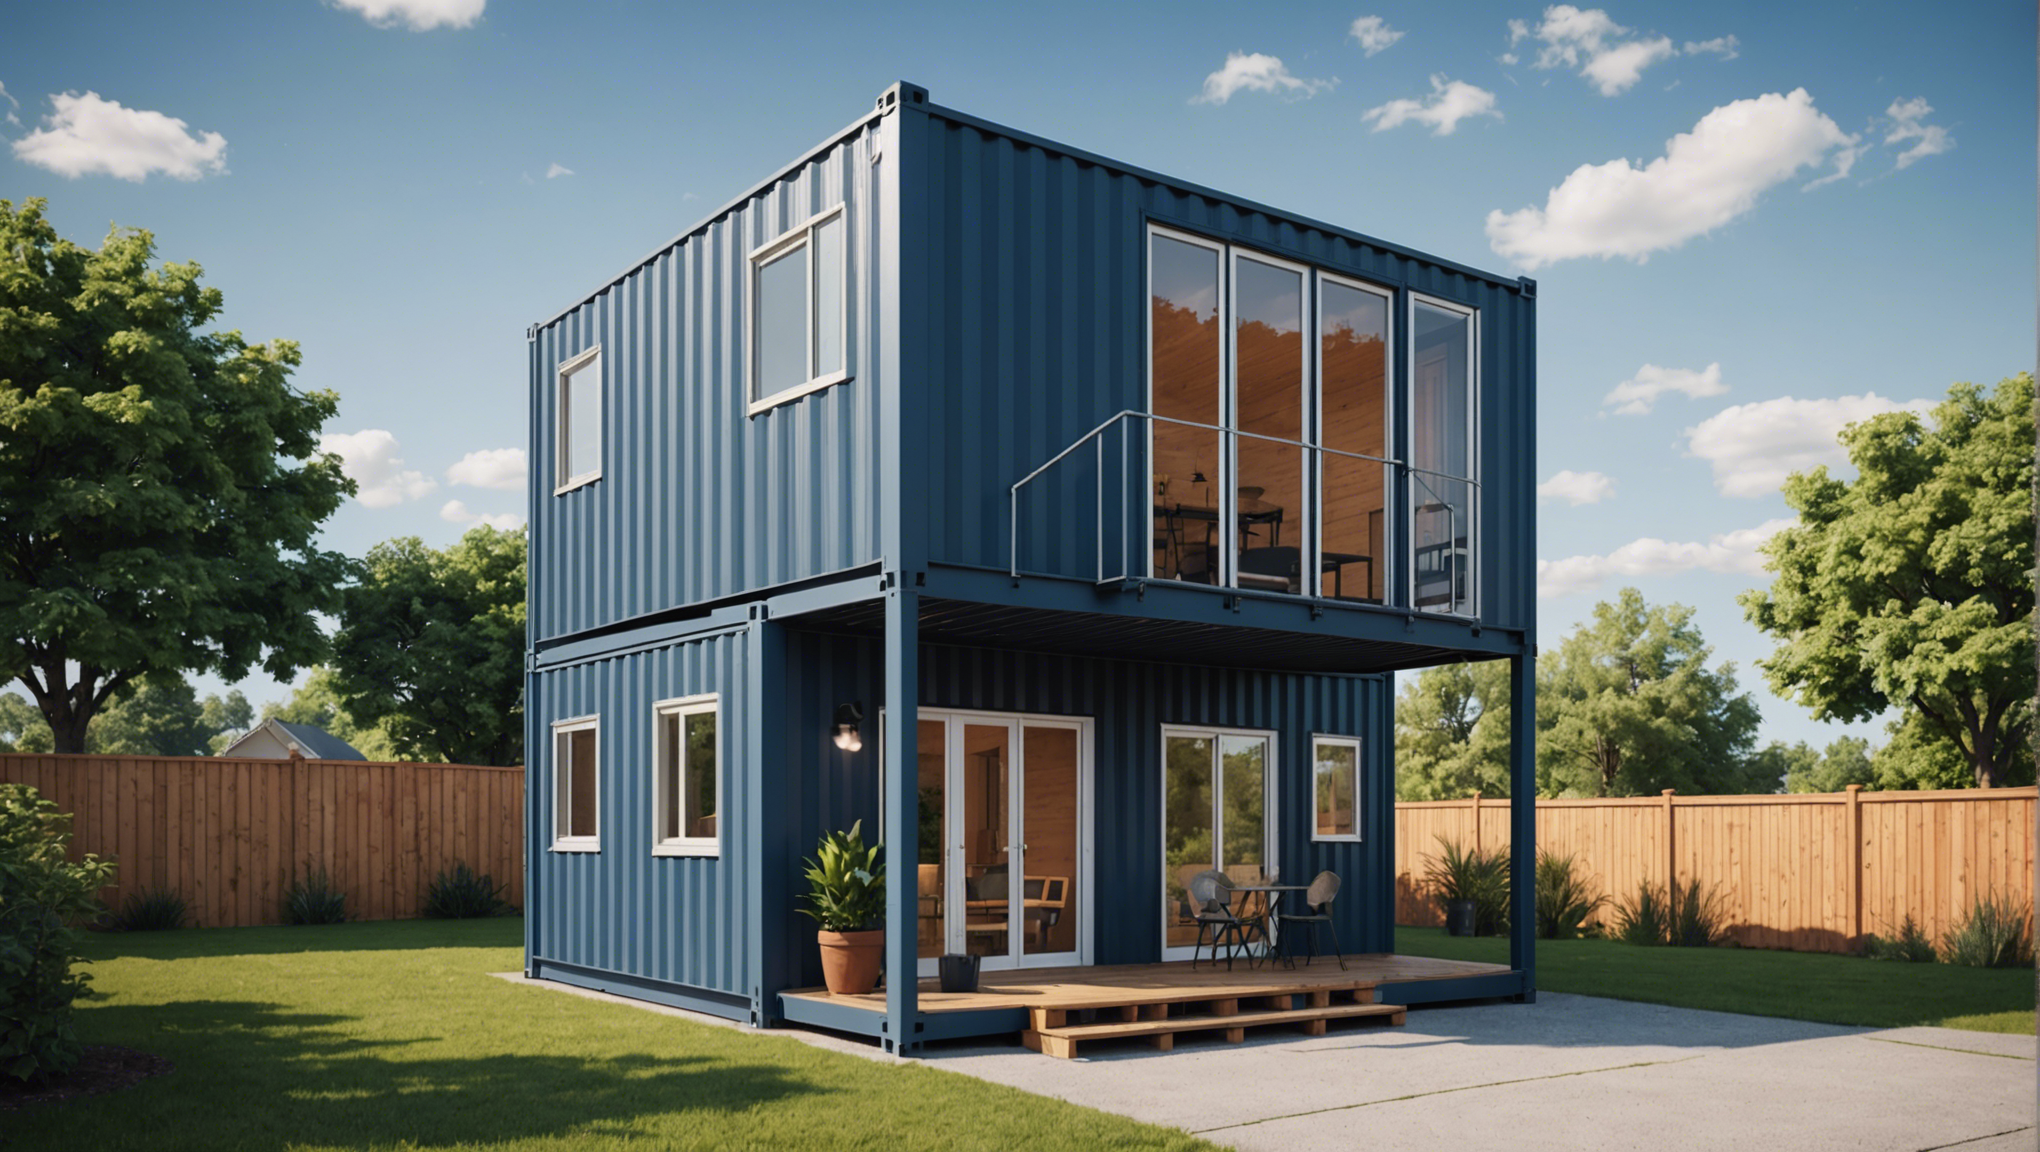 découvrez des conseils pratiques pour isoler efficacement une maison container et améliorer son confort thermique, acoustique et énergétique.